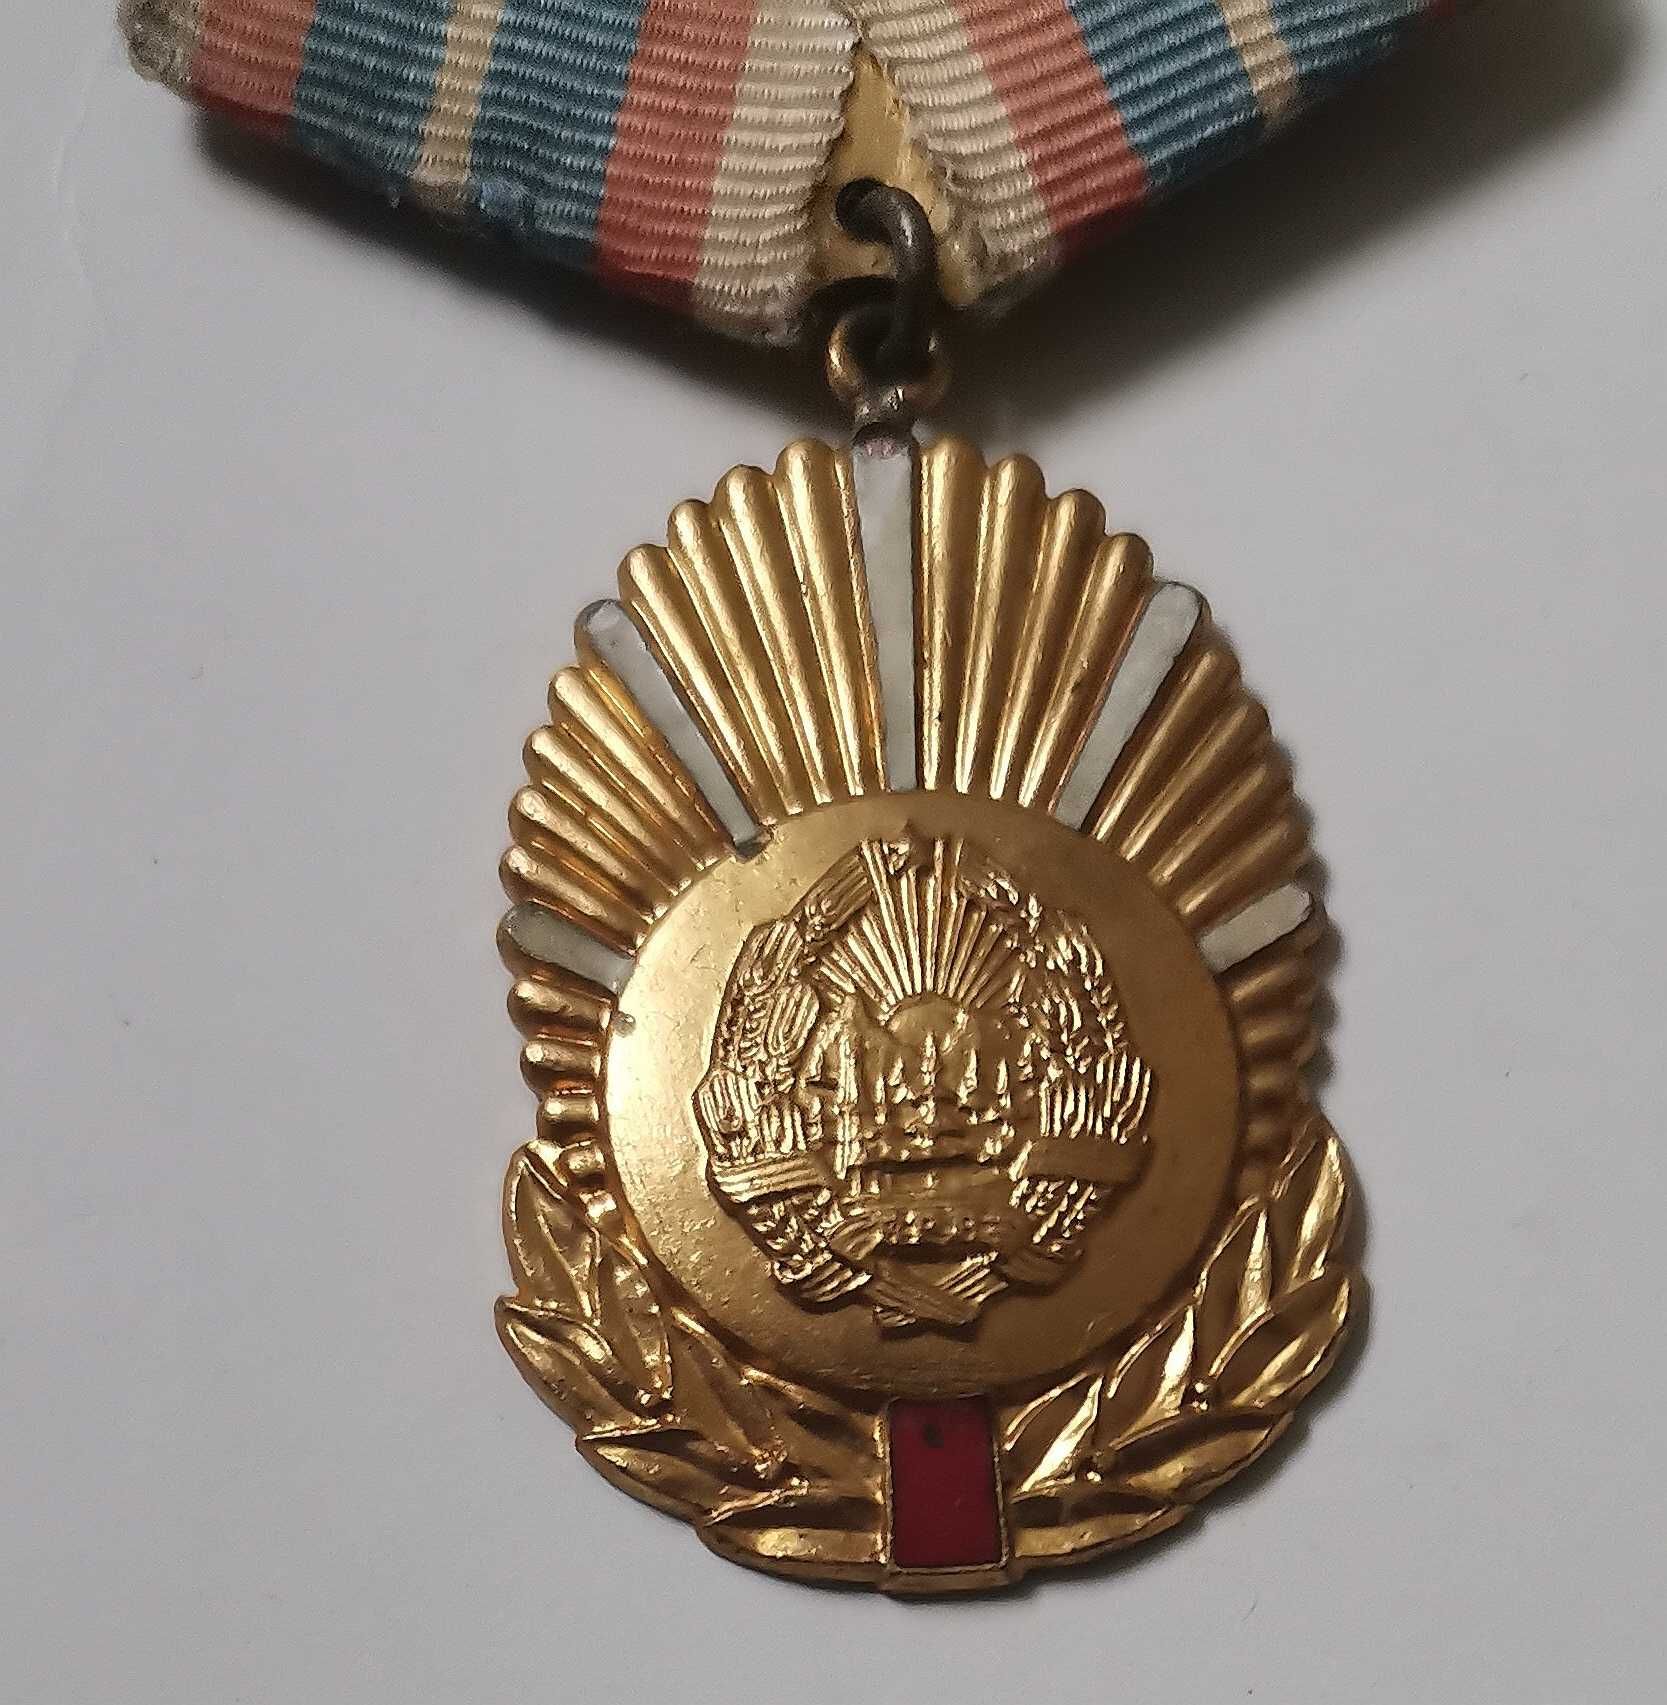 Medalie Militie Securitate, In serviciul patriei socialiste clasa 1